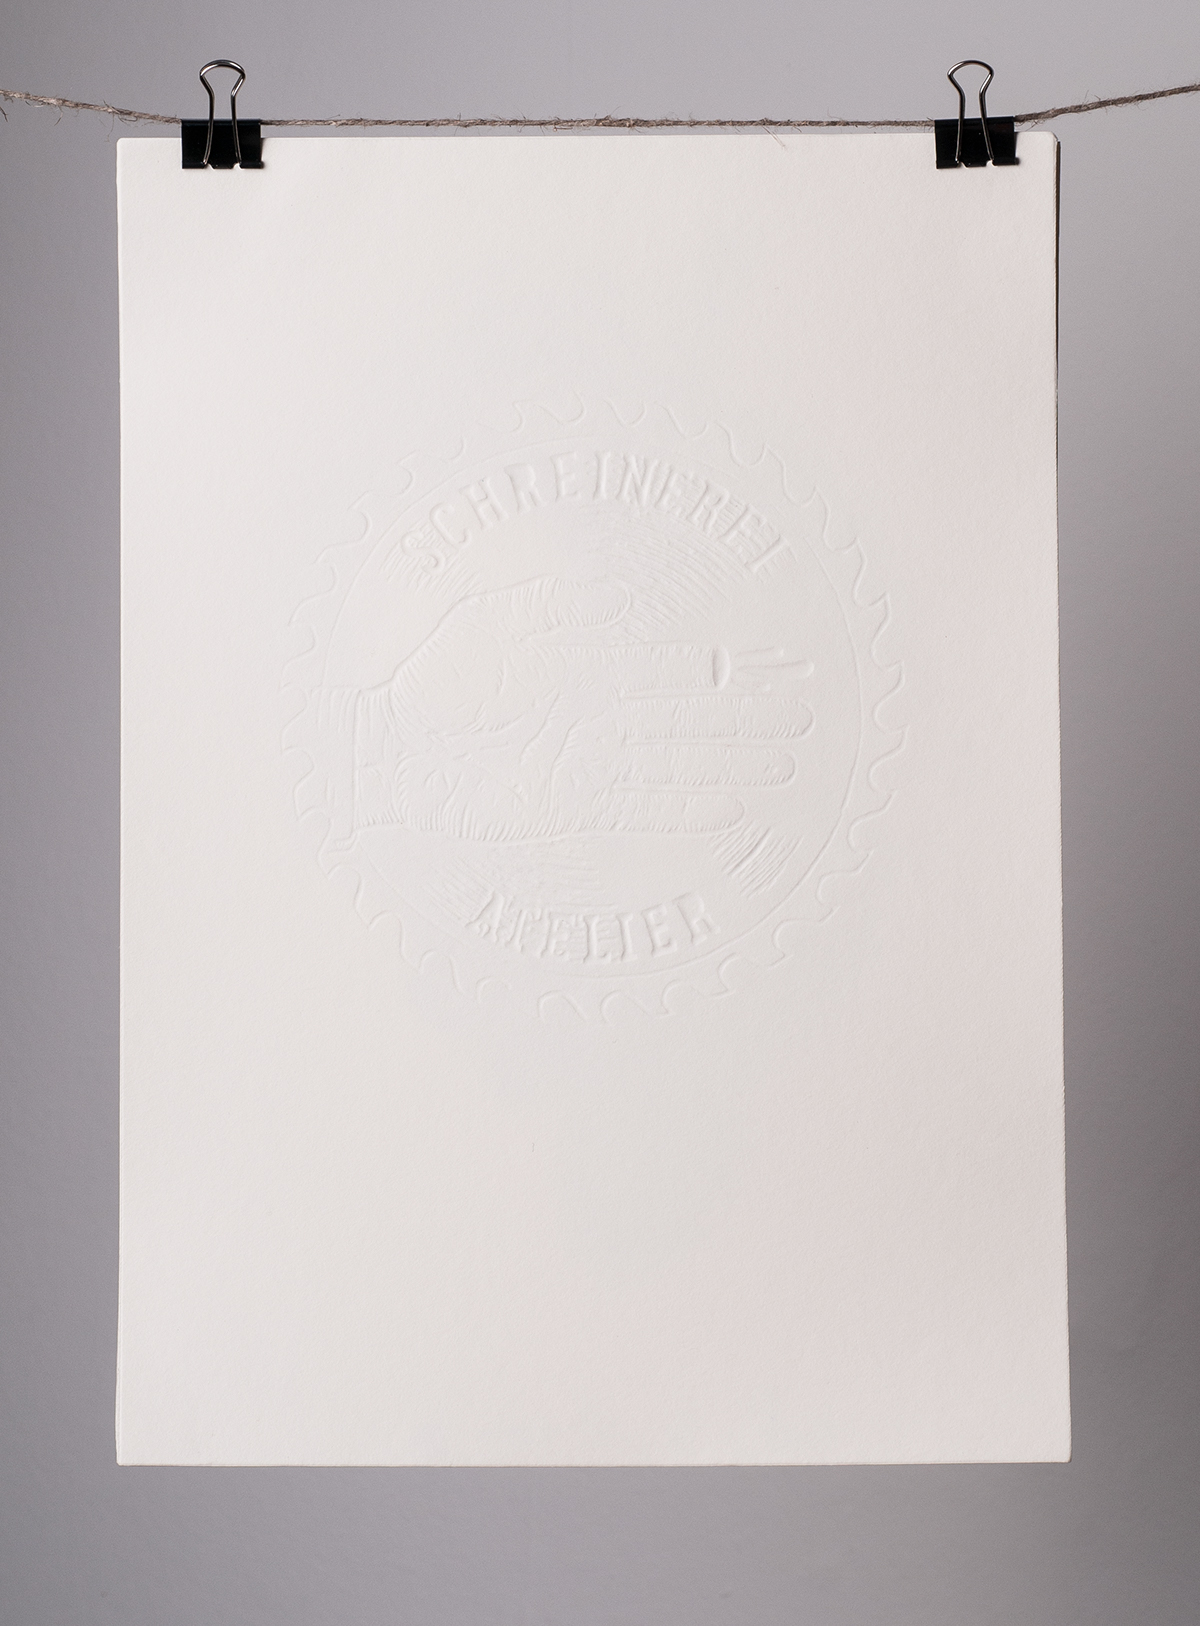 siebdruck kalender Siebdruckkalender illustriert gedruckt atelier Atelier Schreinerei schriftgestaltung